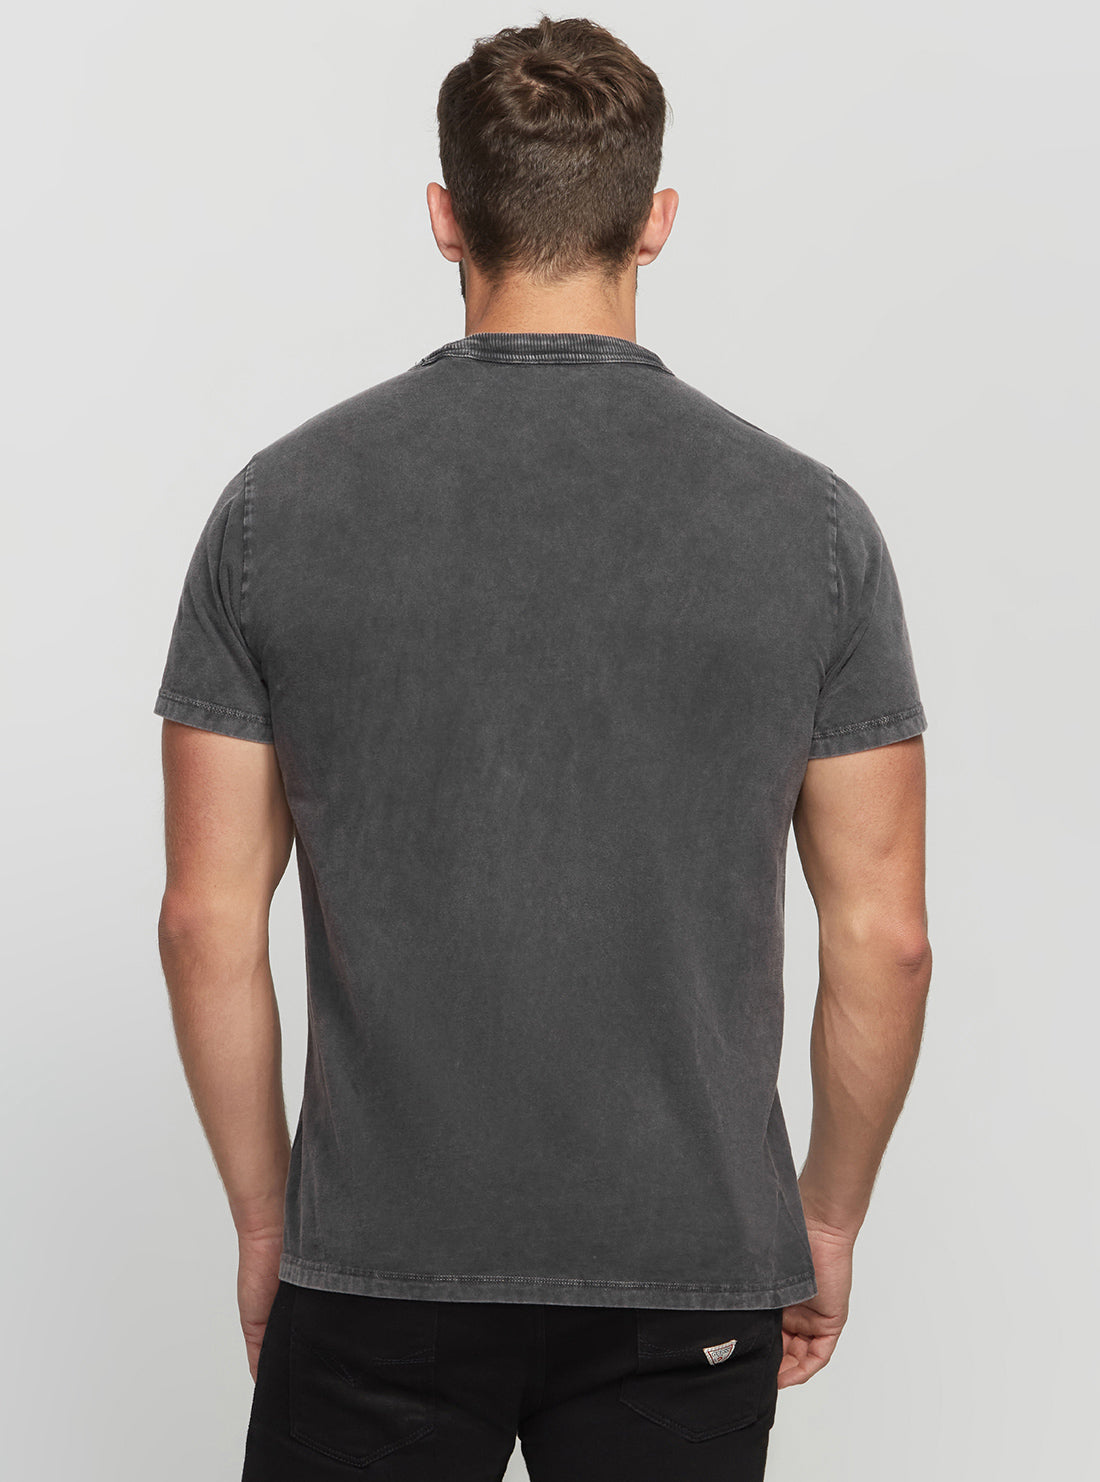 GUESS Men's Black Doriano T-Shirt M2BI88KA260 Back View